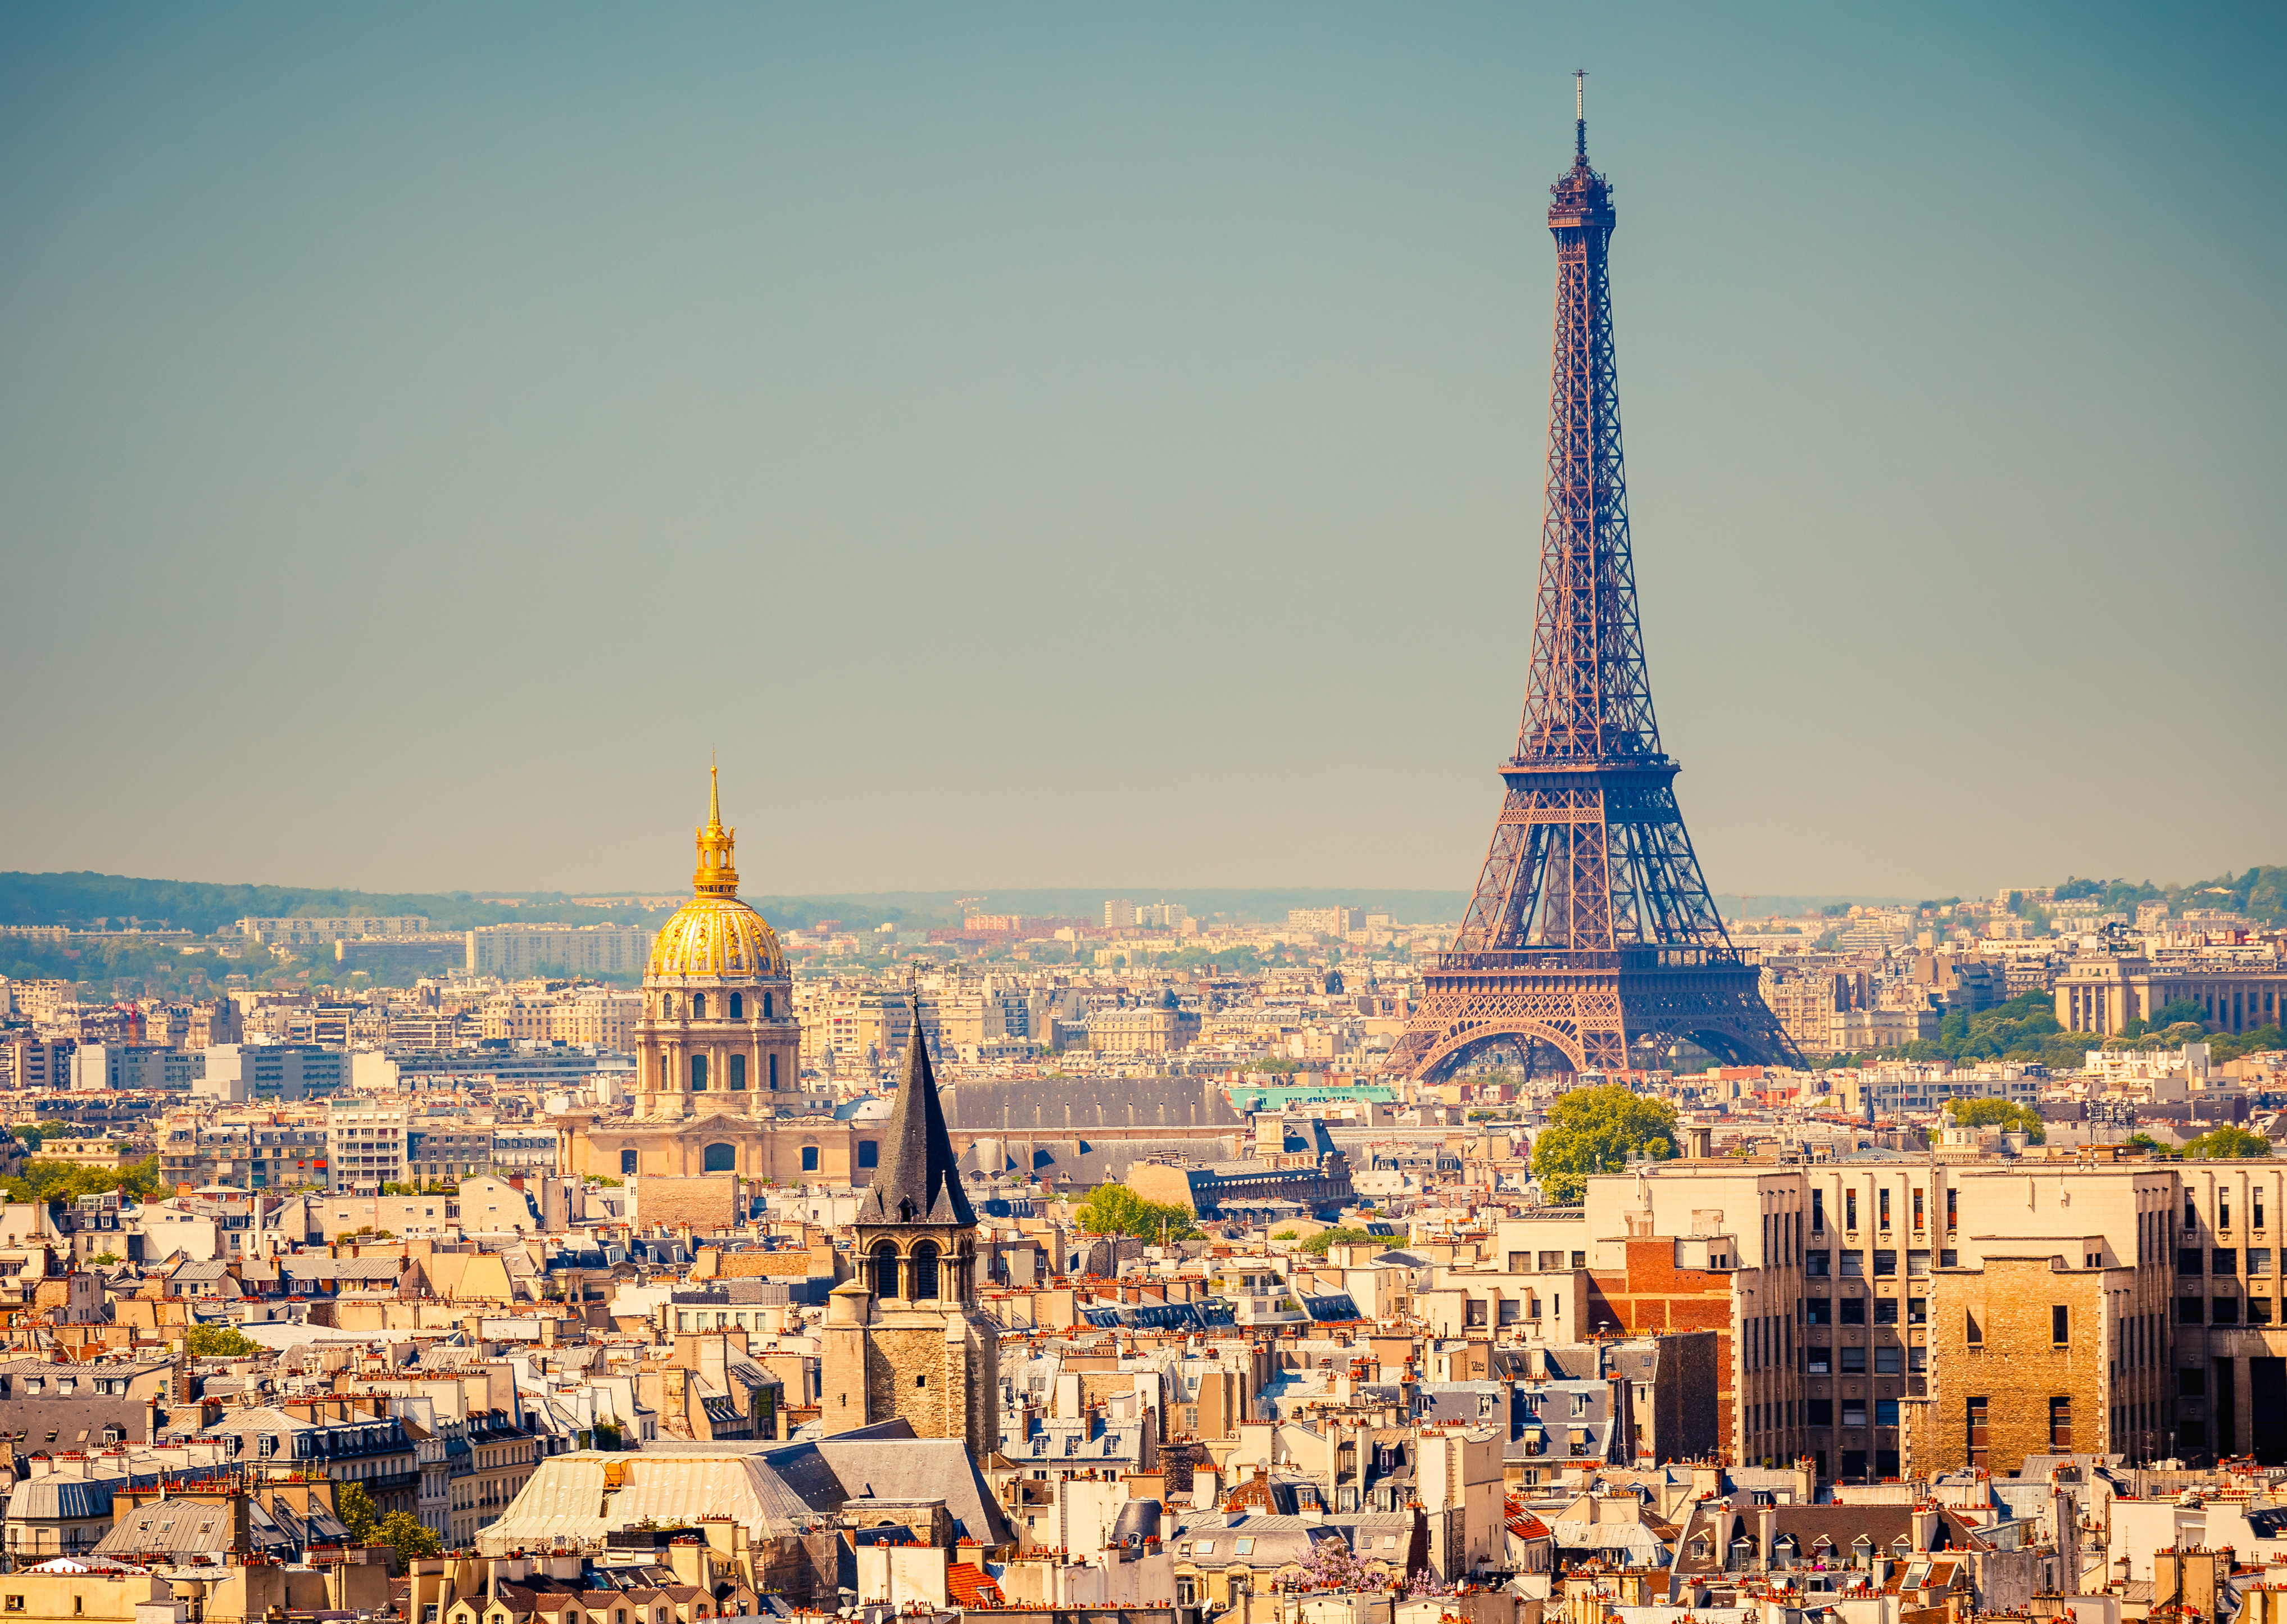 Paris selfie - Does wine tourism boost sales?